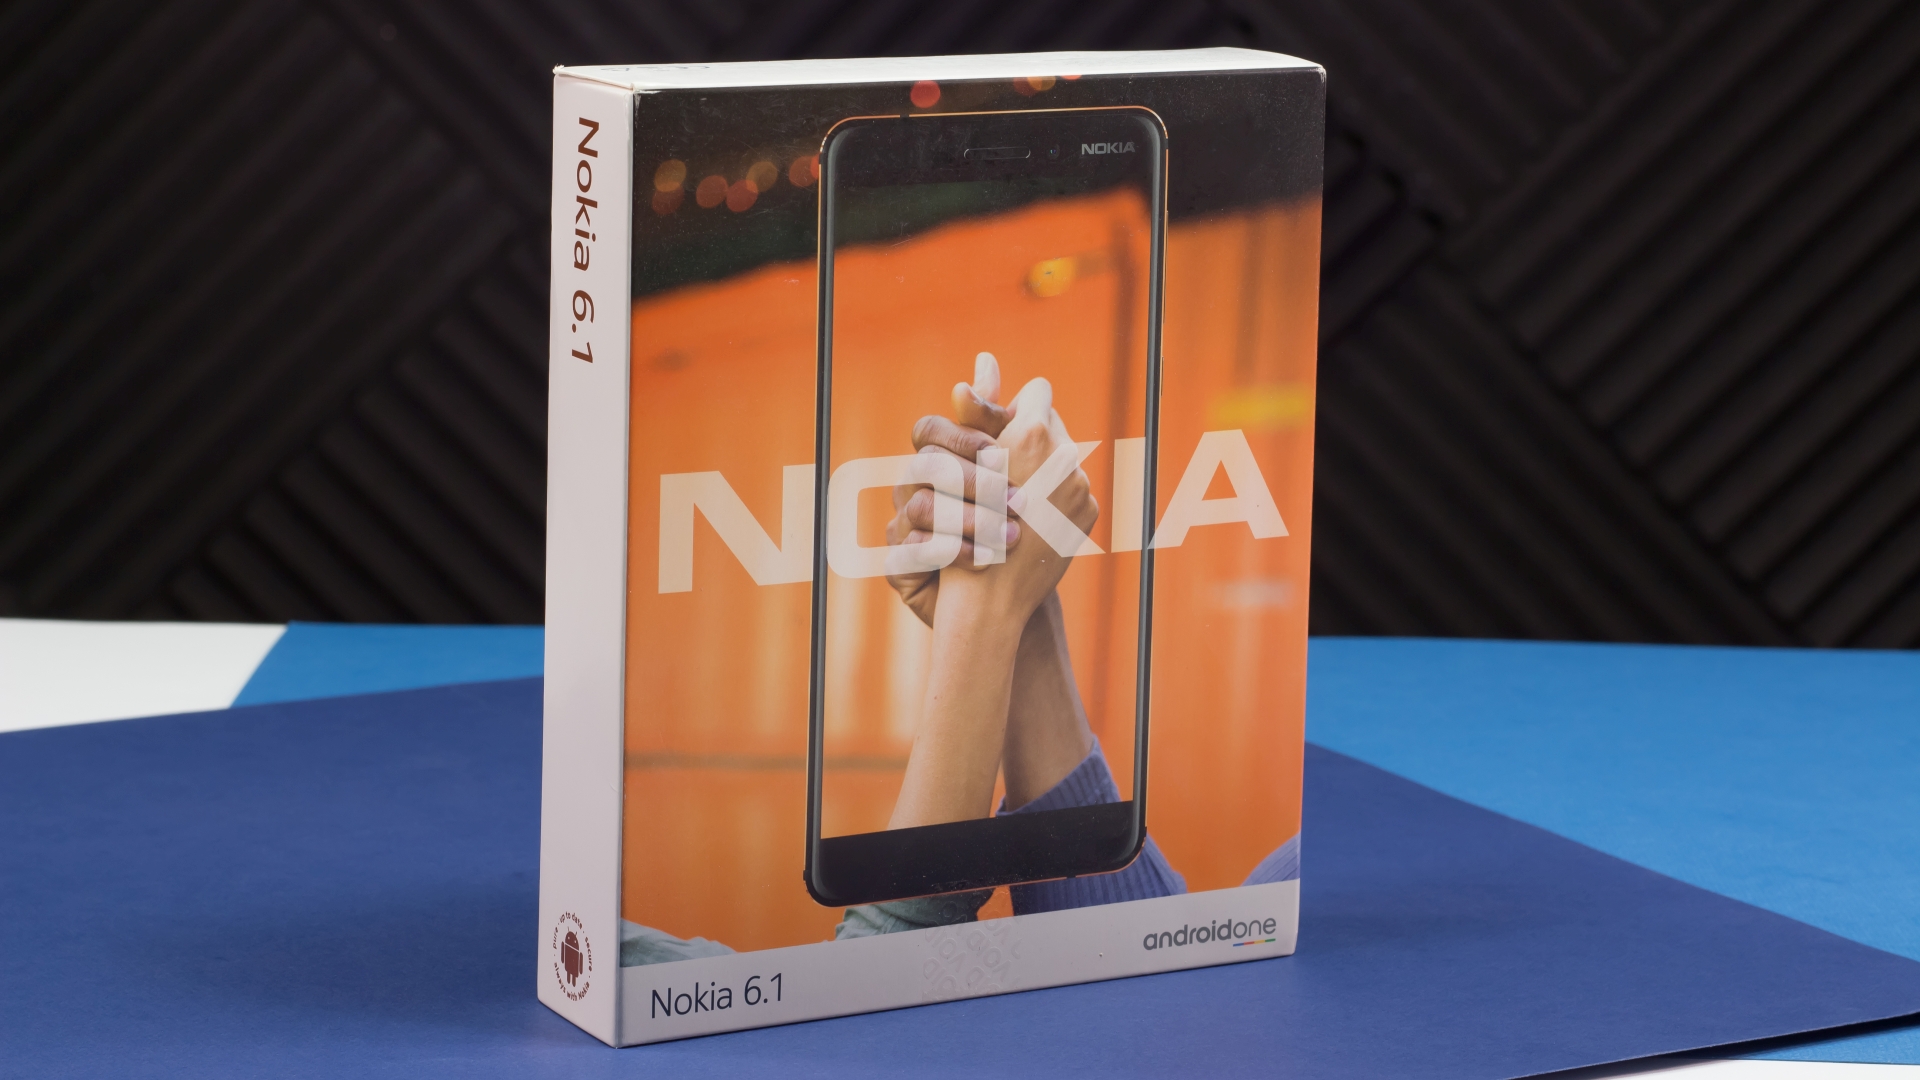 Nokia 6 2018